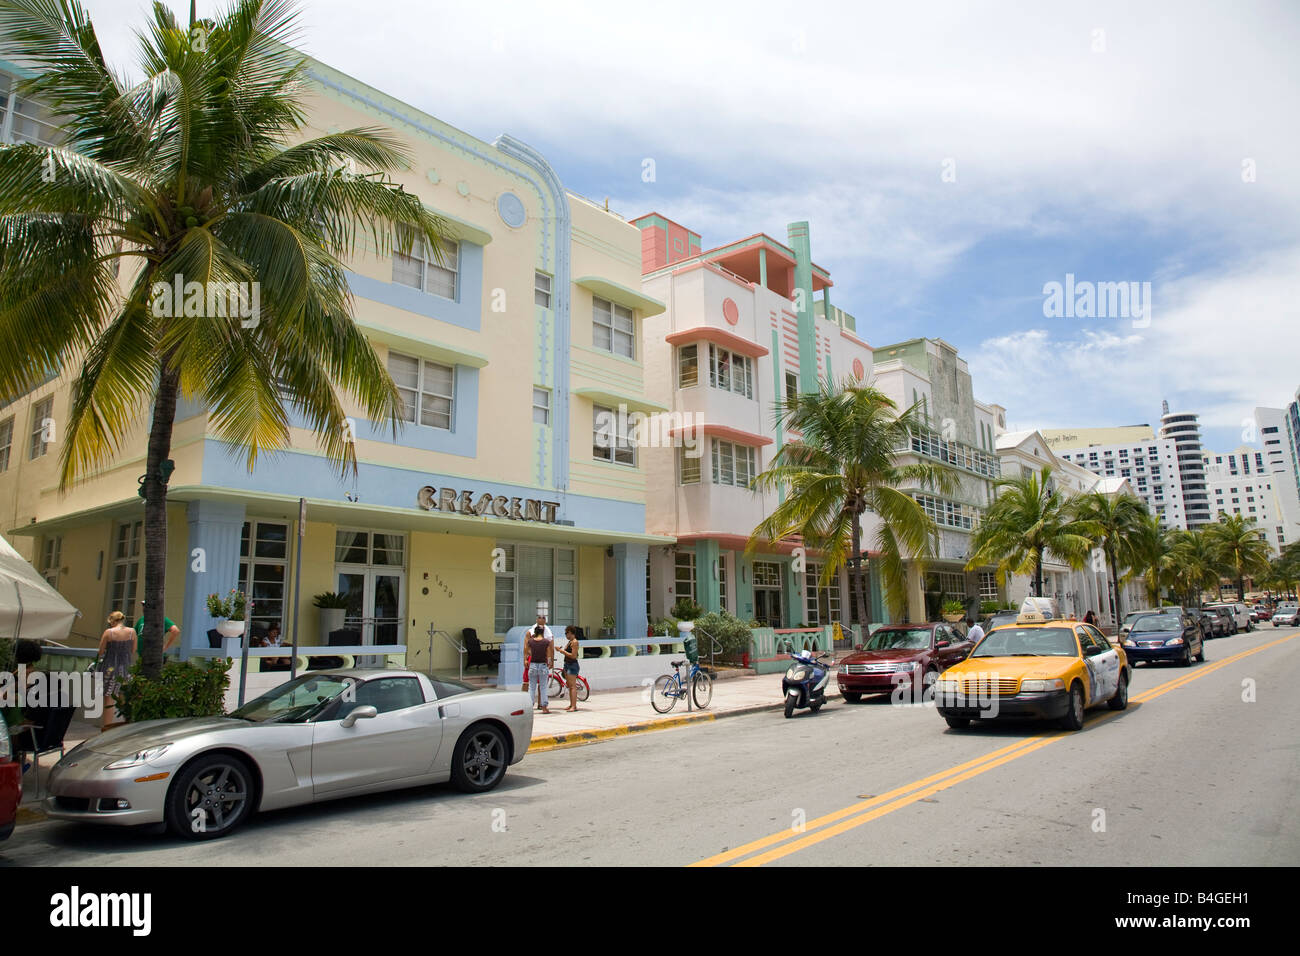 Crescent Hotel, South Beach, Miami, Florida Foto Stock